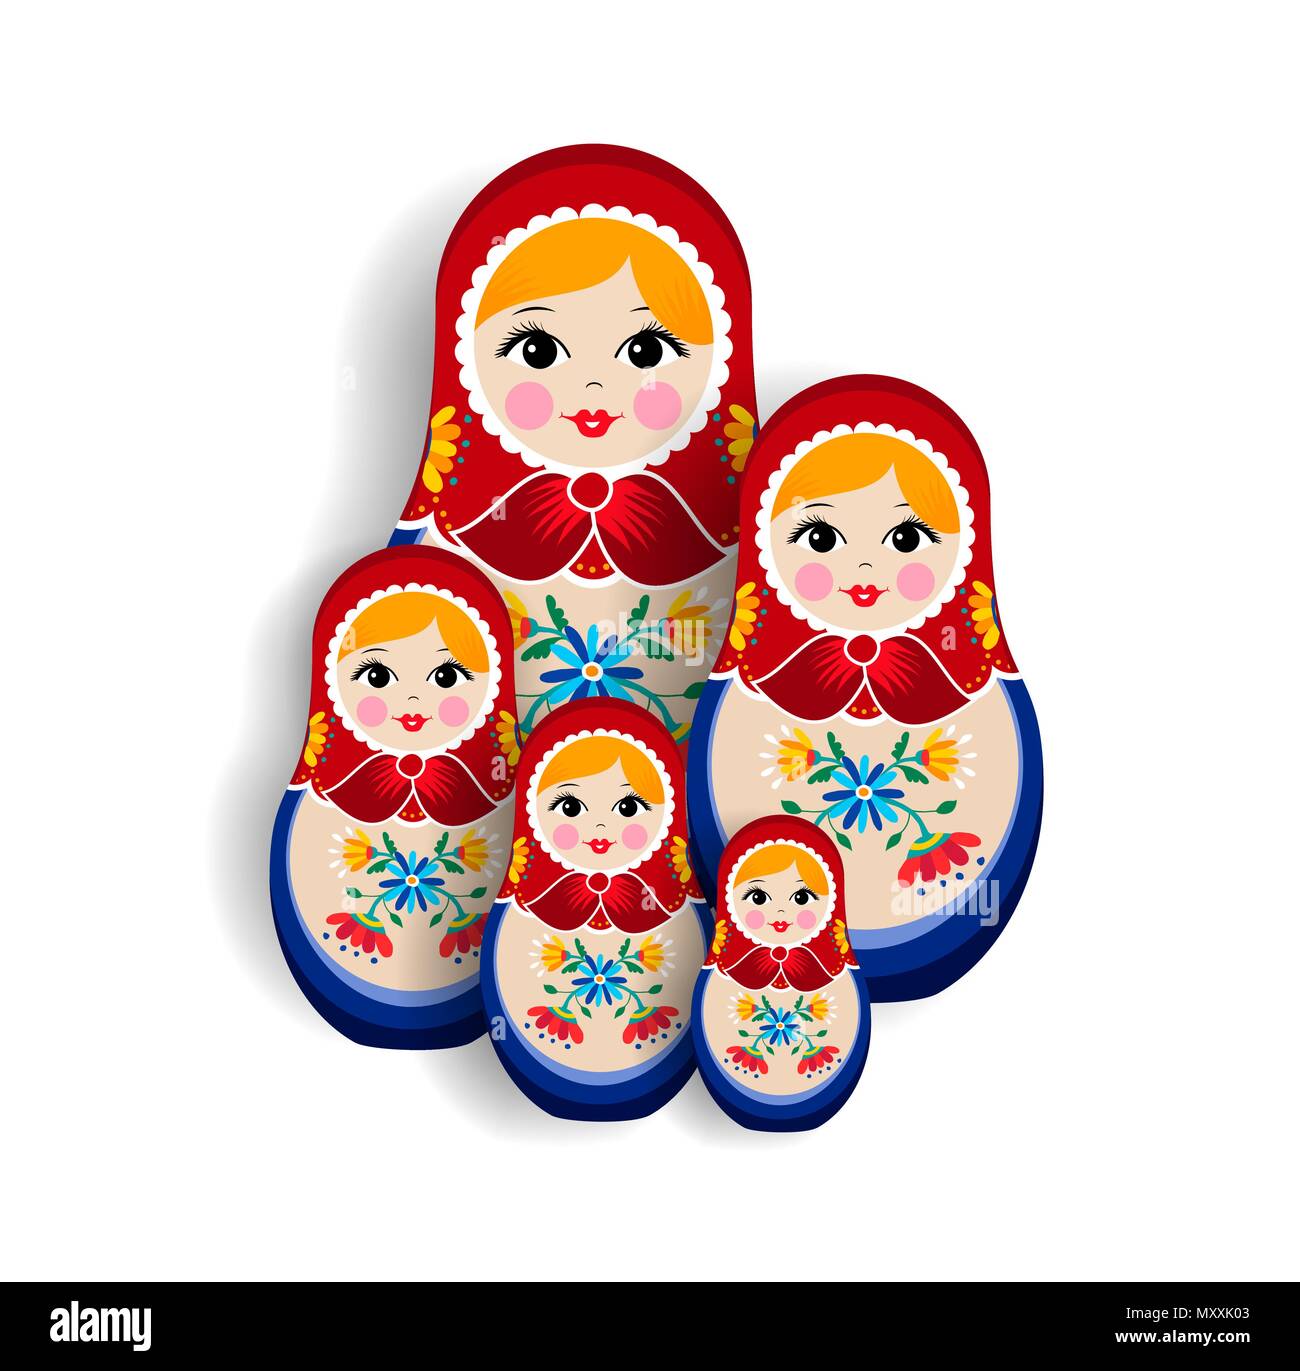 icône de matriochka de poupée russe dans un style plat isolé sur